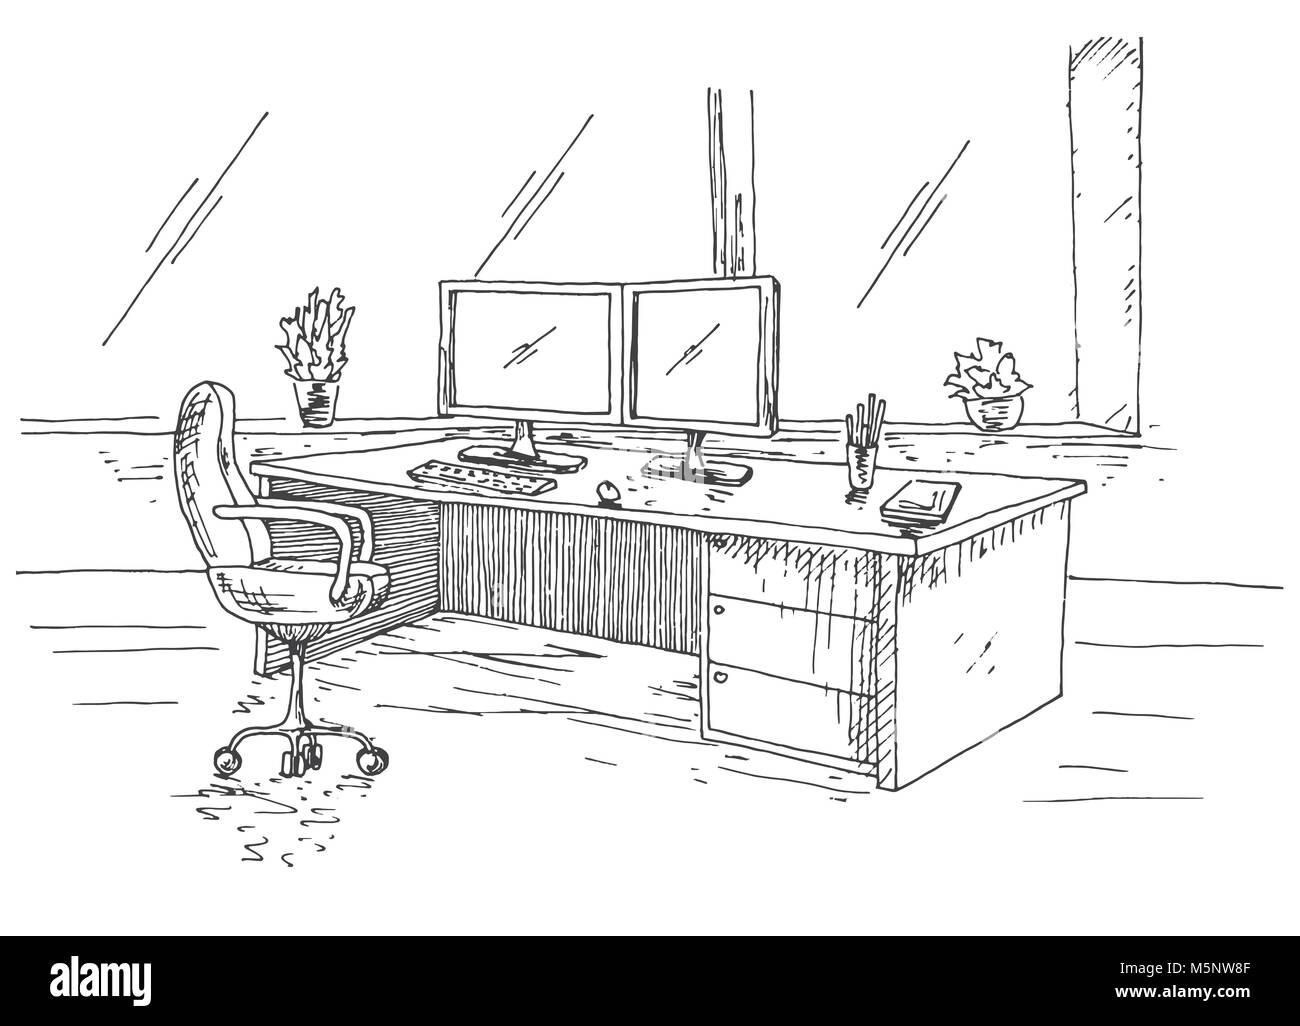 Hand Arbeitsplatz hinter den Monitoren gezeichnet. Arbeitstisch mit zwei Monitoren, Bürostuhl. Vector Illustration einer Skizze Stil. Stock Vektor